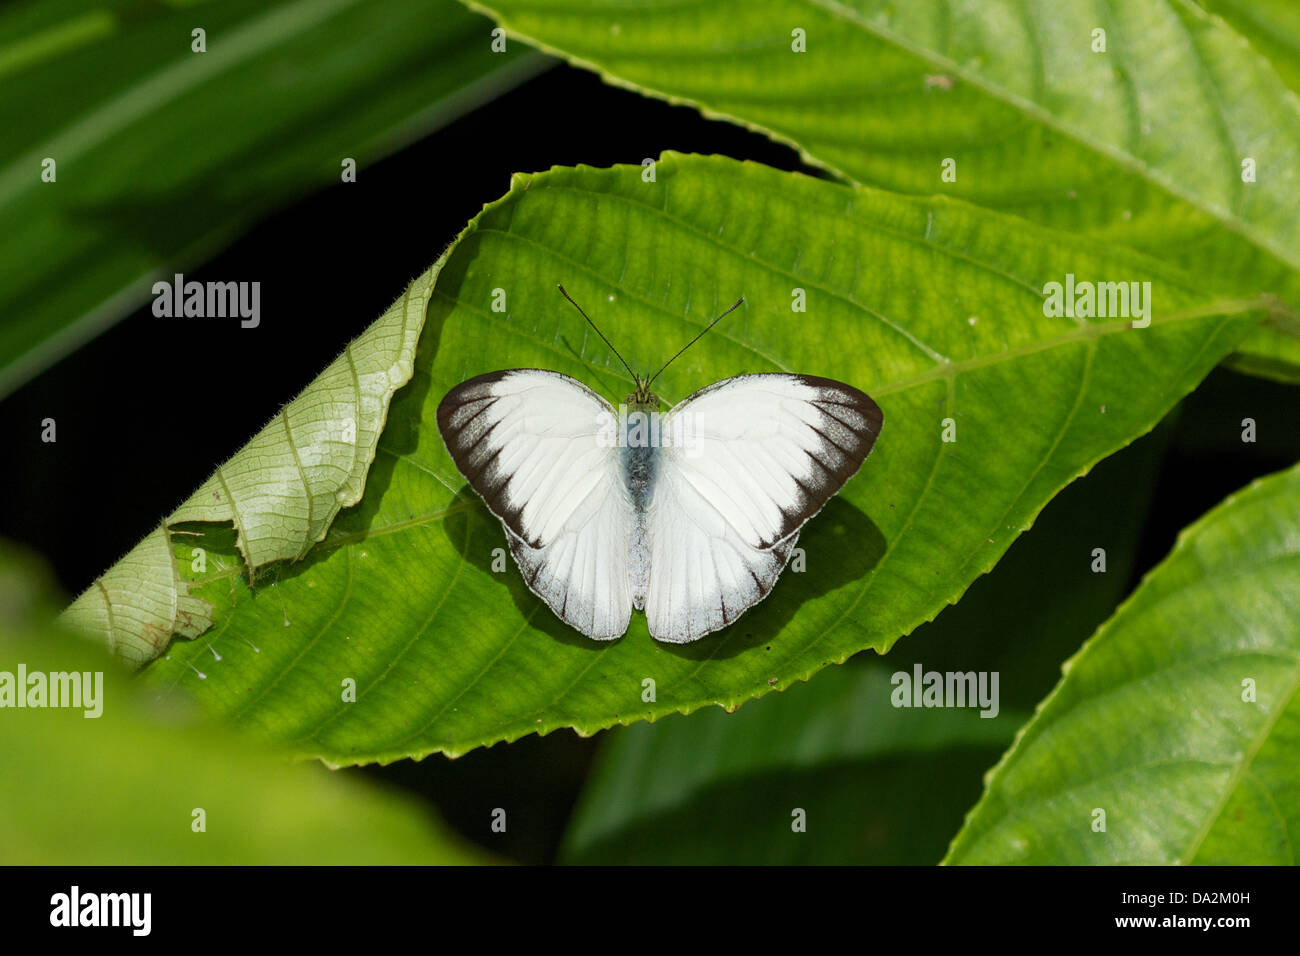 Udaiana cynis cynis, la foresta di bianco, è una farfalla nella famiglia Pieridae. Essa si trova nel sud-est asiatico. Foto Stock